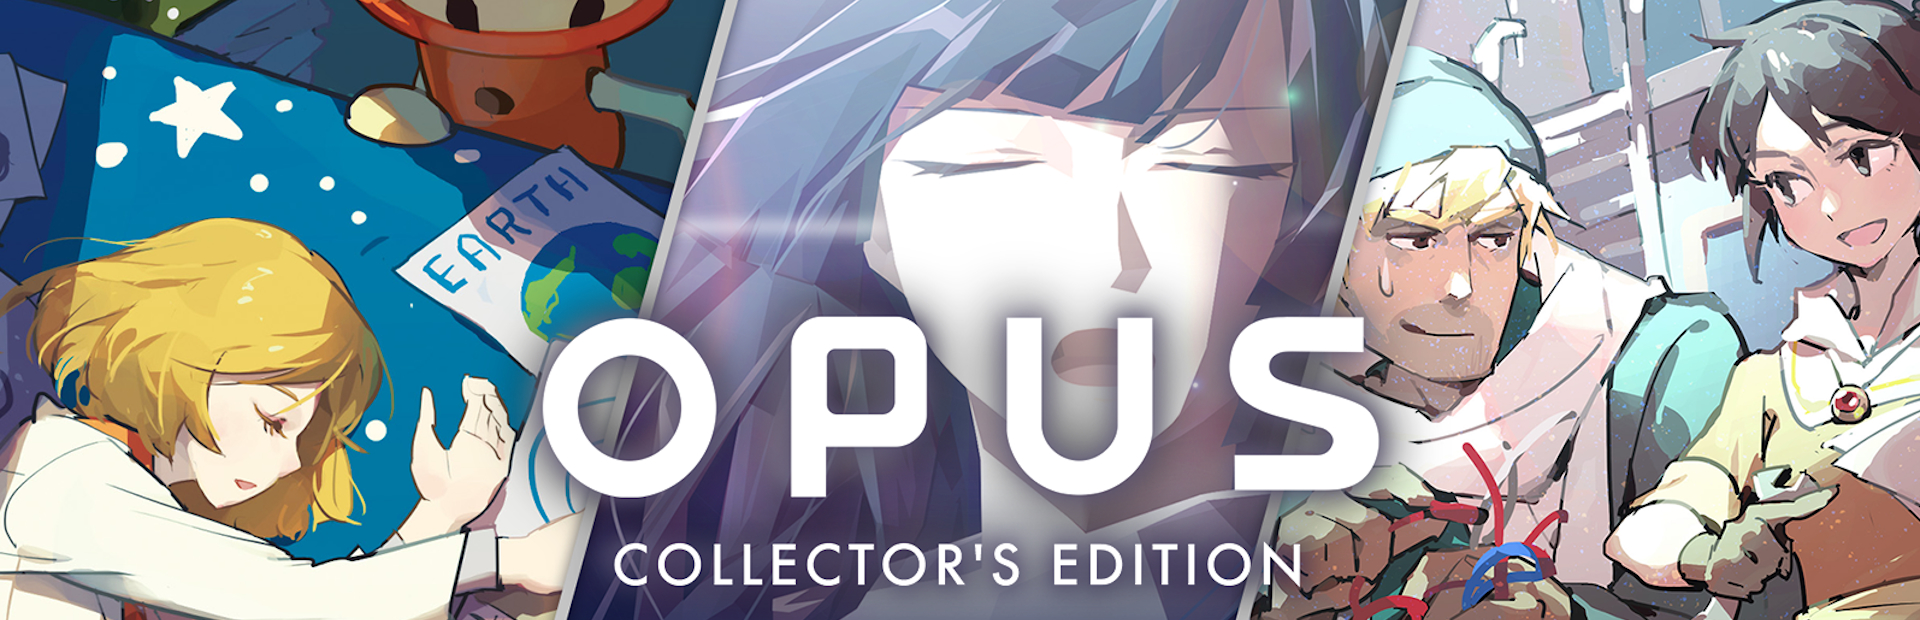 دانلود بازی OPUS: Collector's Edition برای پی سی | گیمباتو